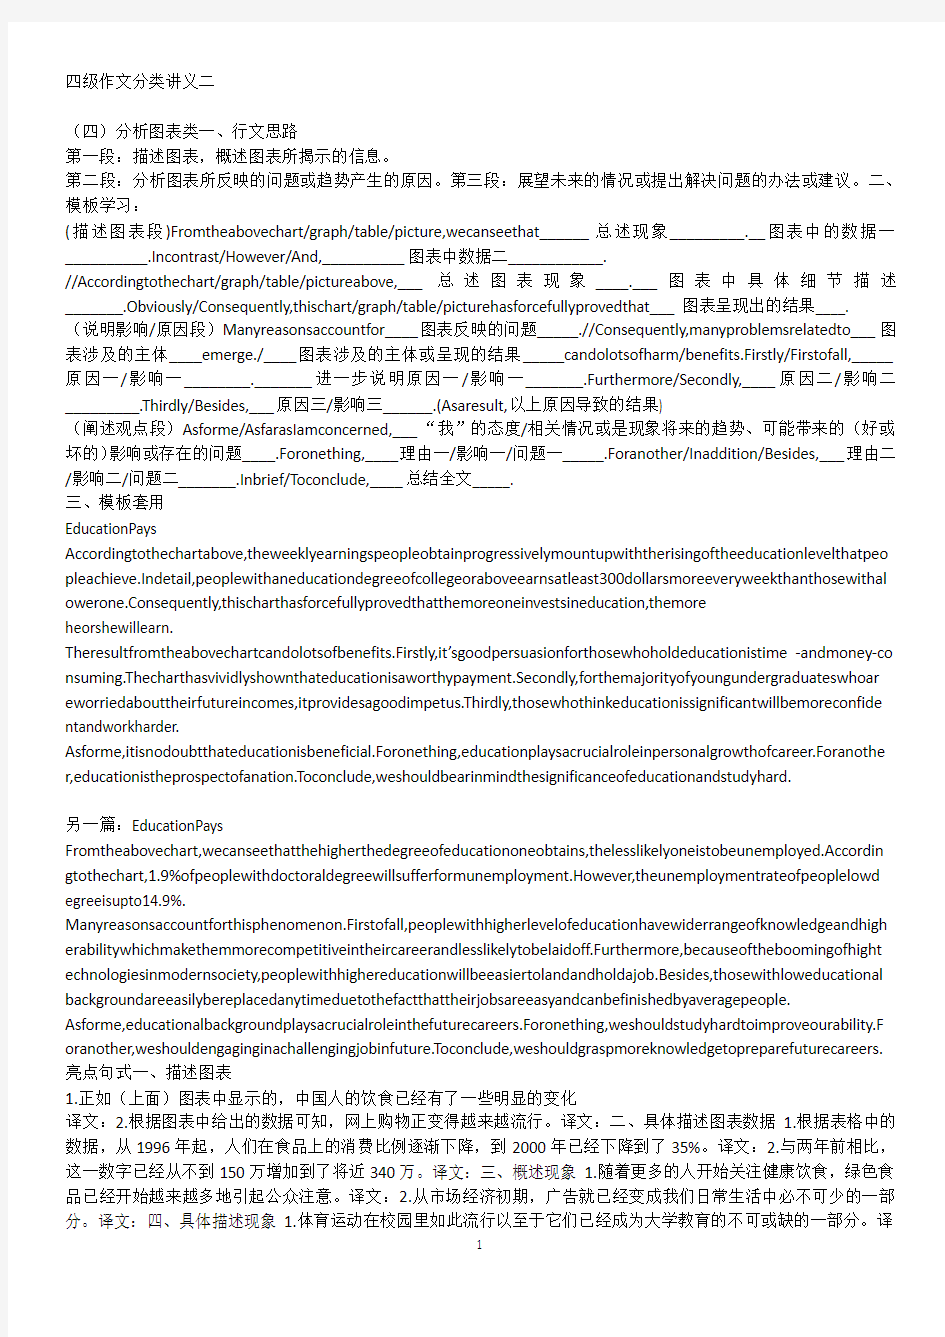 2014年12月大学英语四级考试听力笔记讲义 guzhen